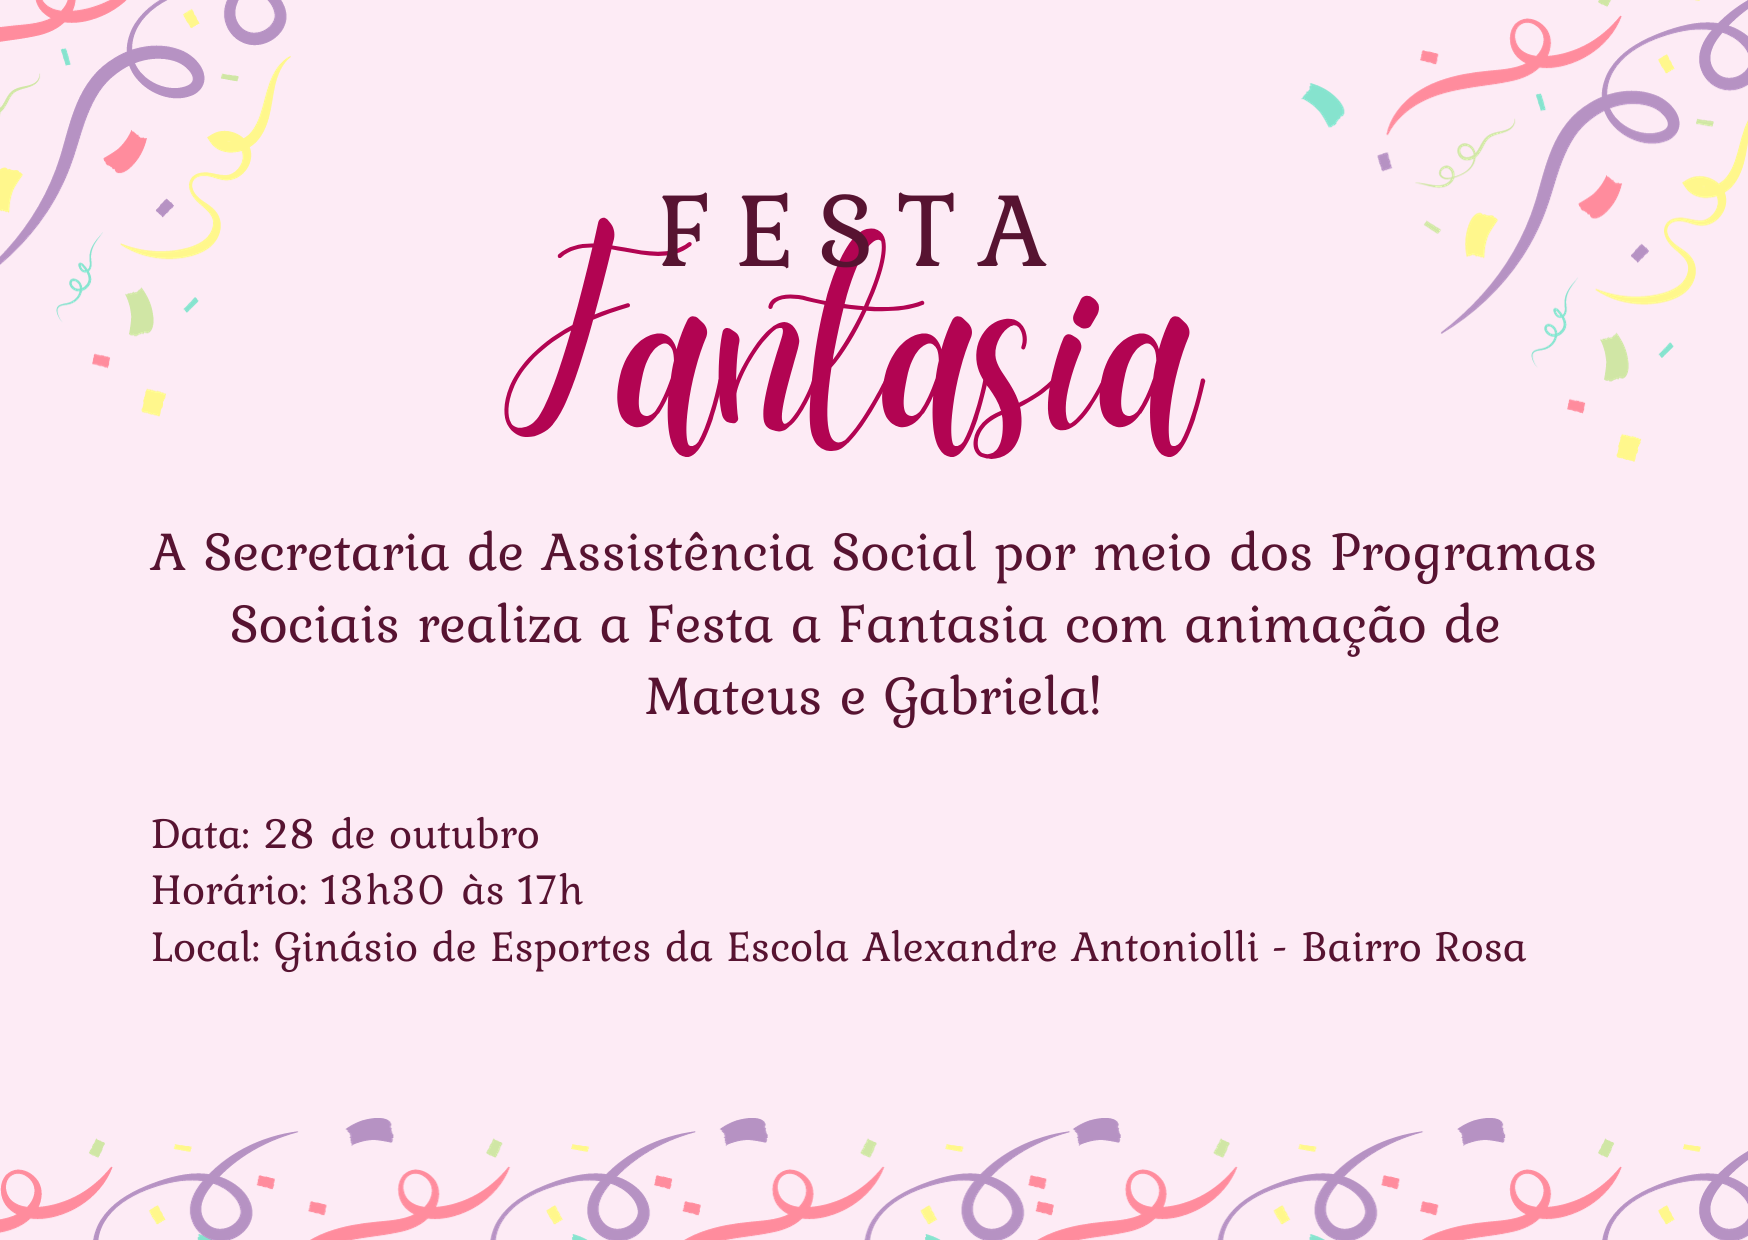 Prefeitura de Faxinal dos Guedes promove evento alusivo ao dia das